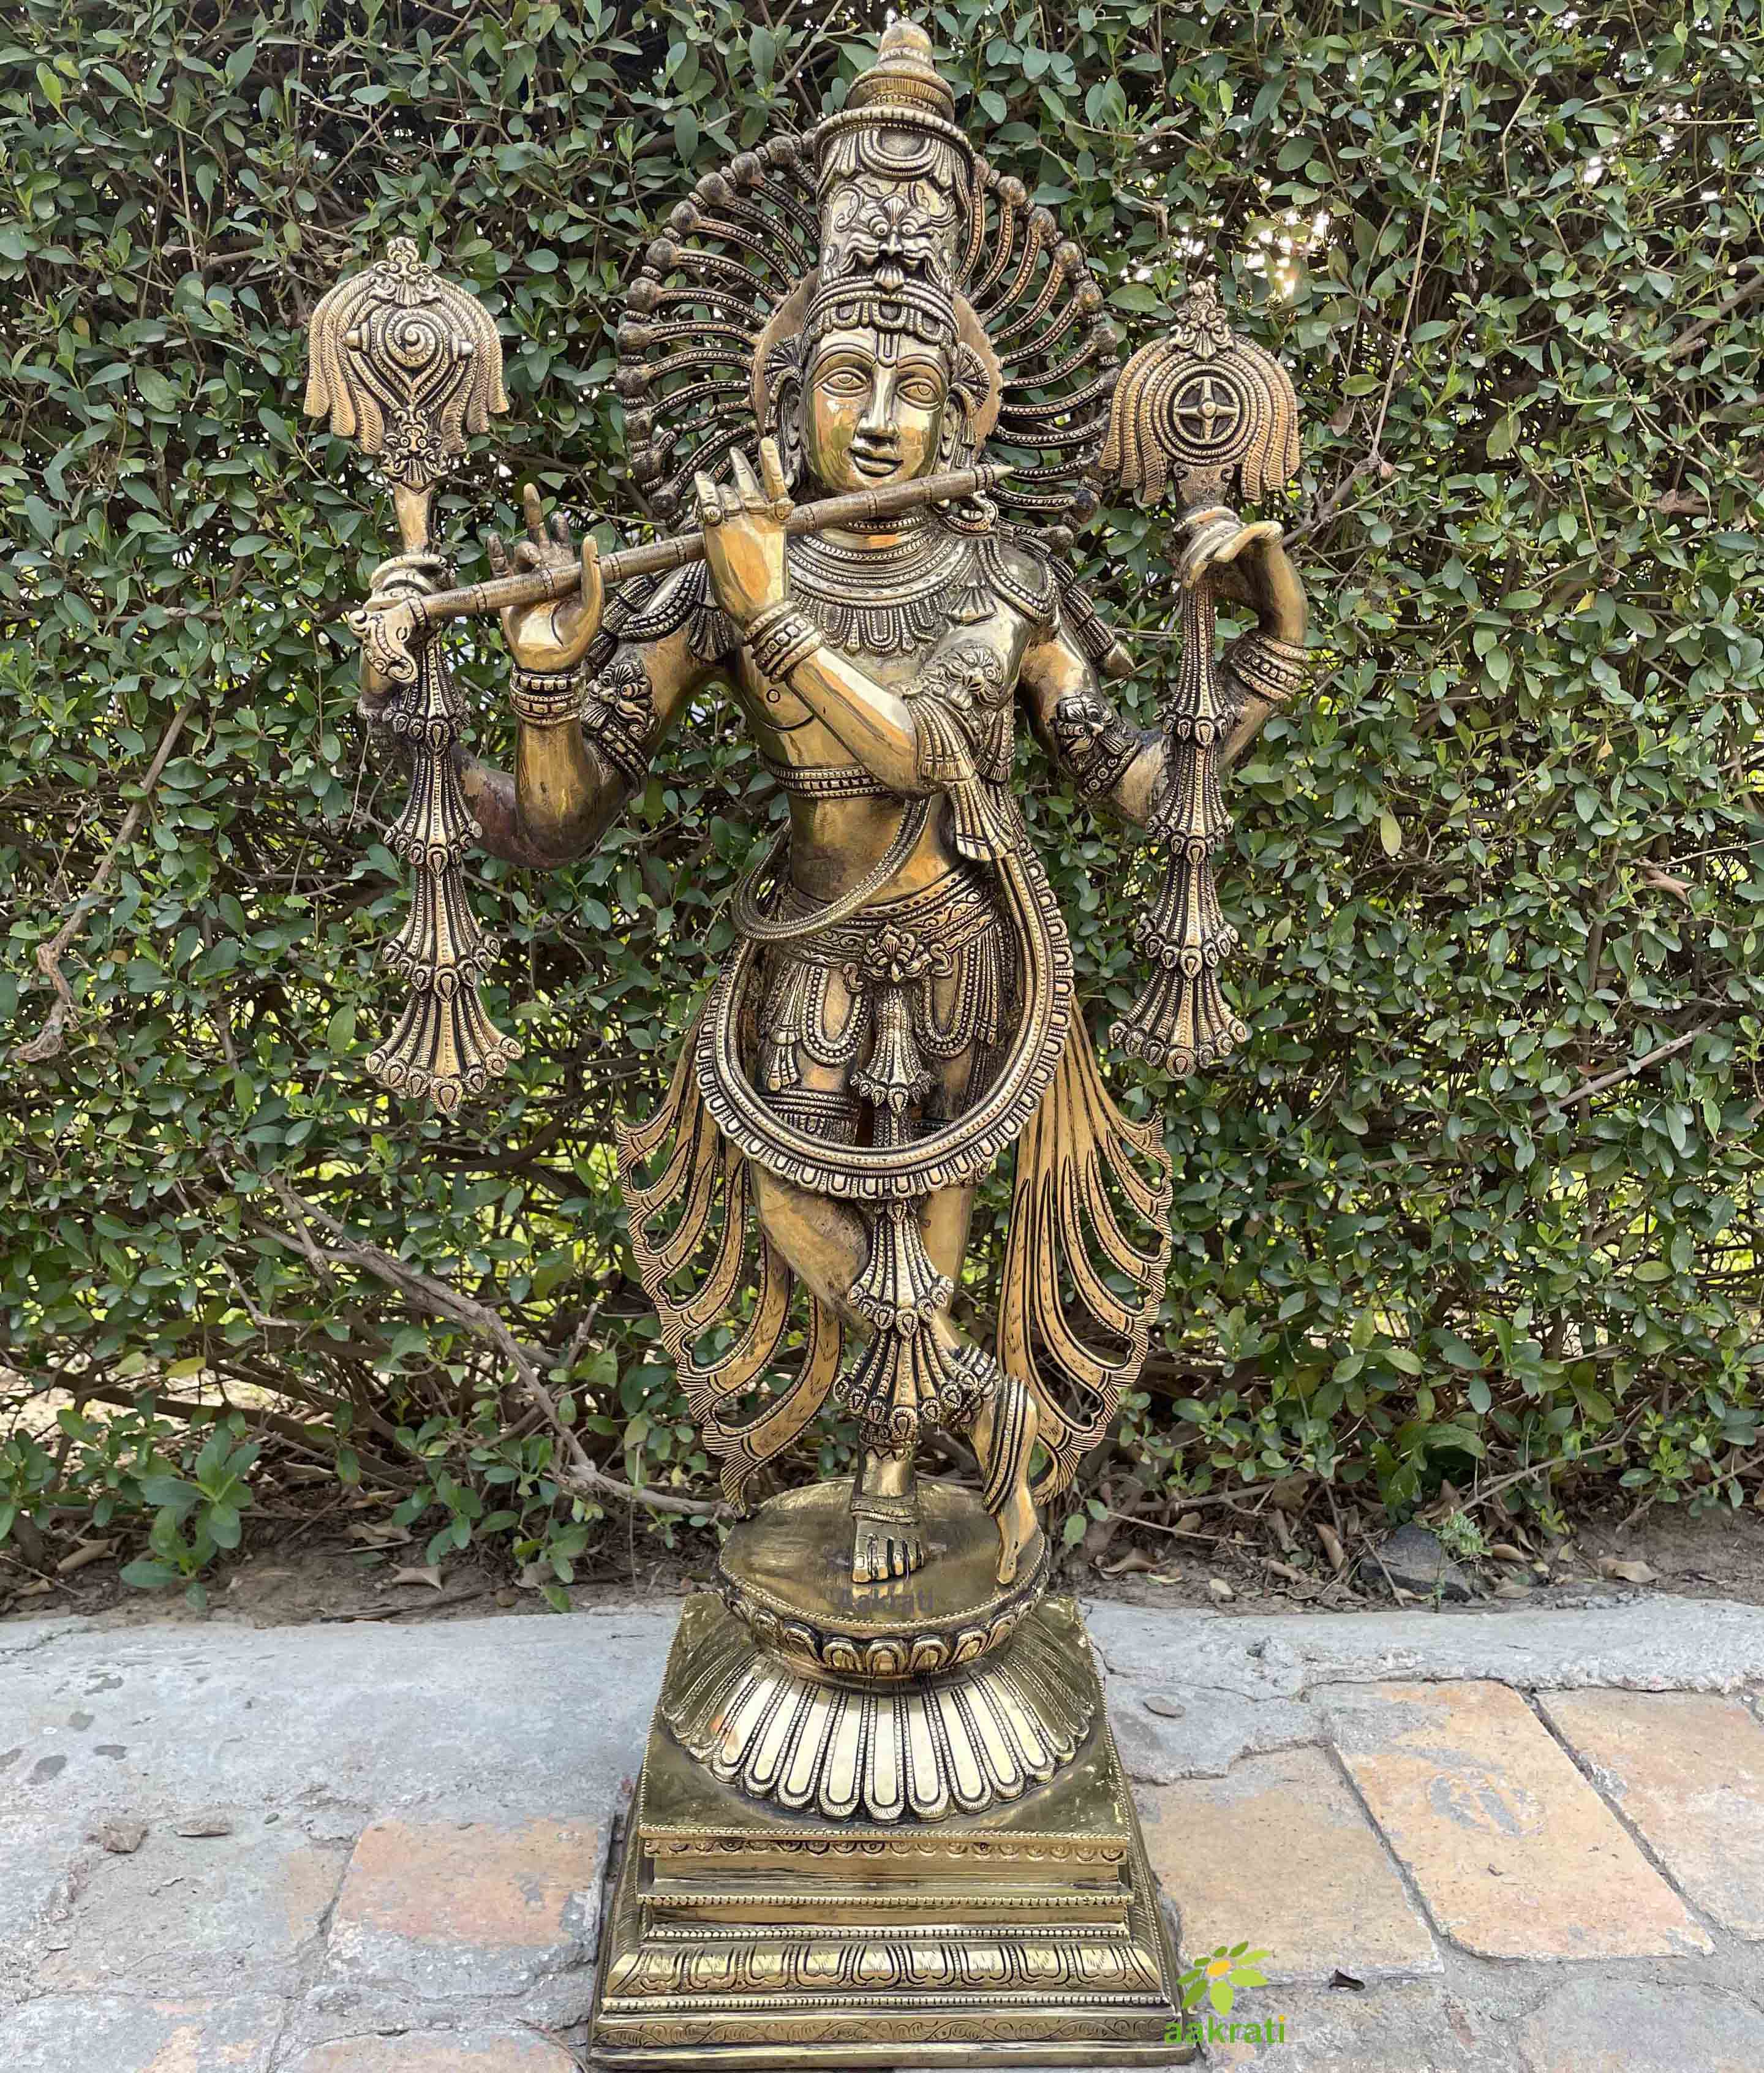 Magnificent Large Brass God Krishna Statue Stonework 79 cm Tall